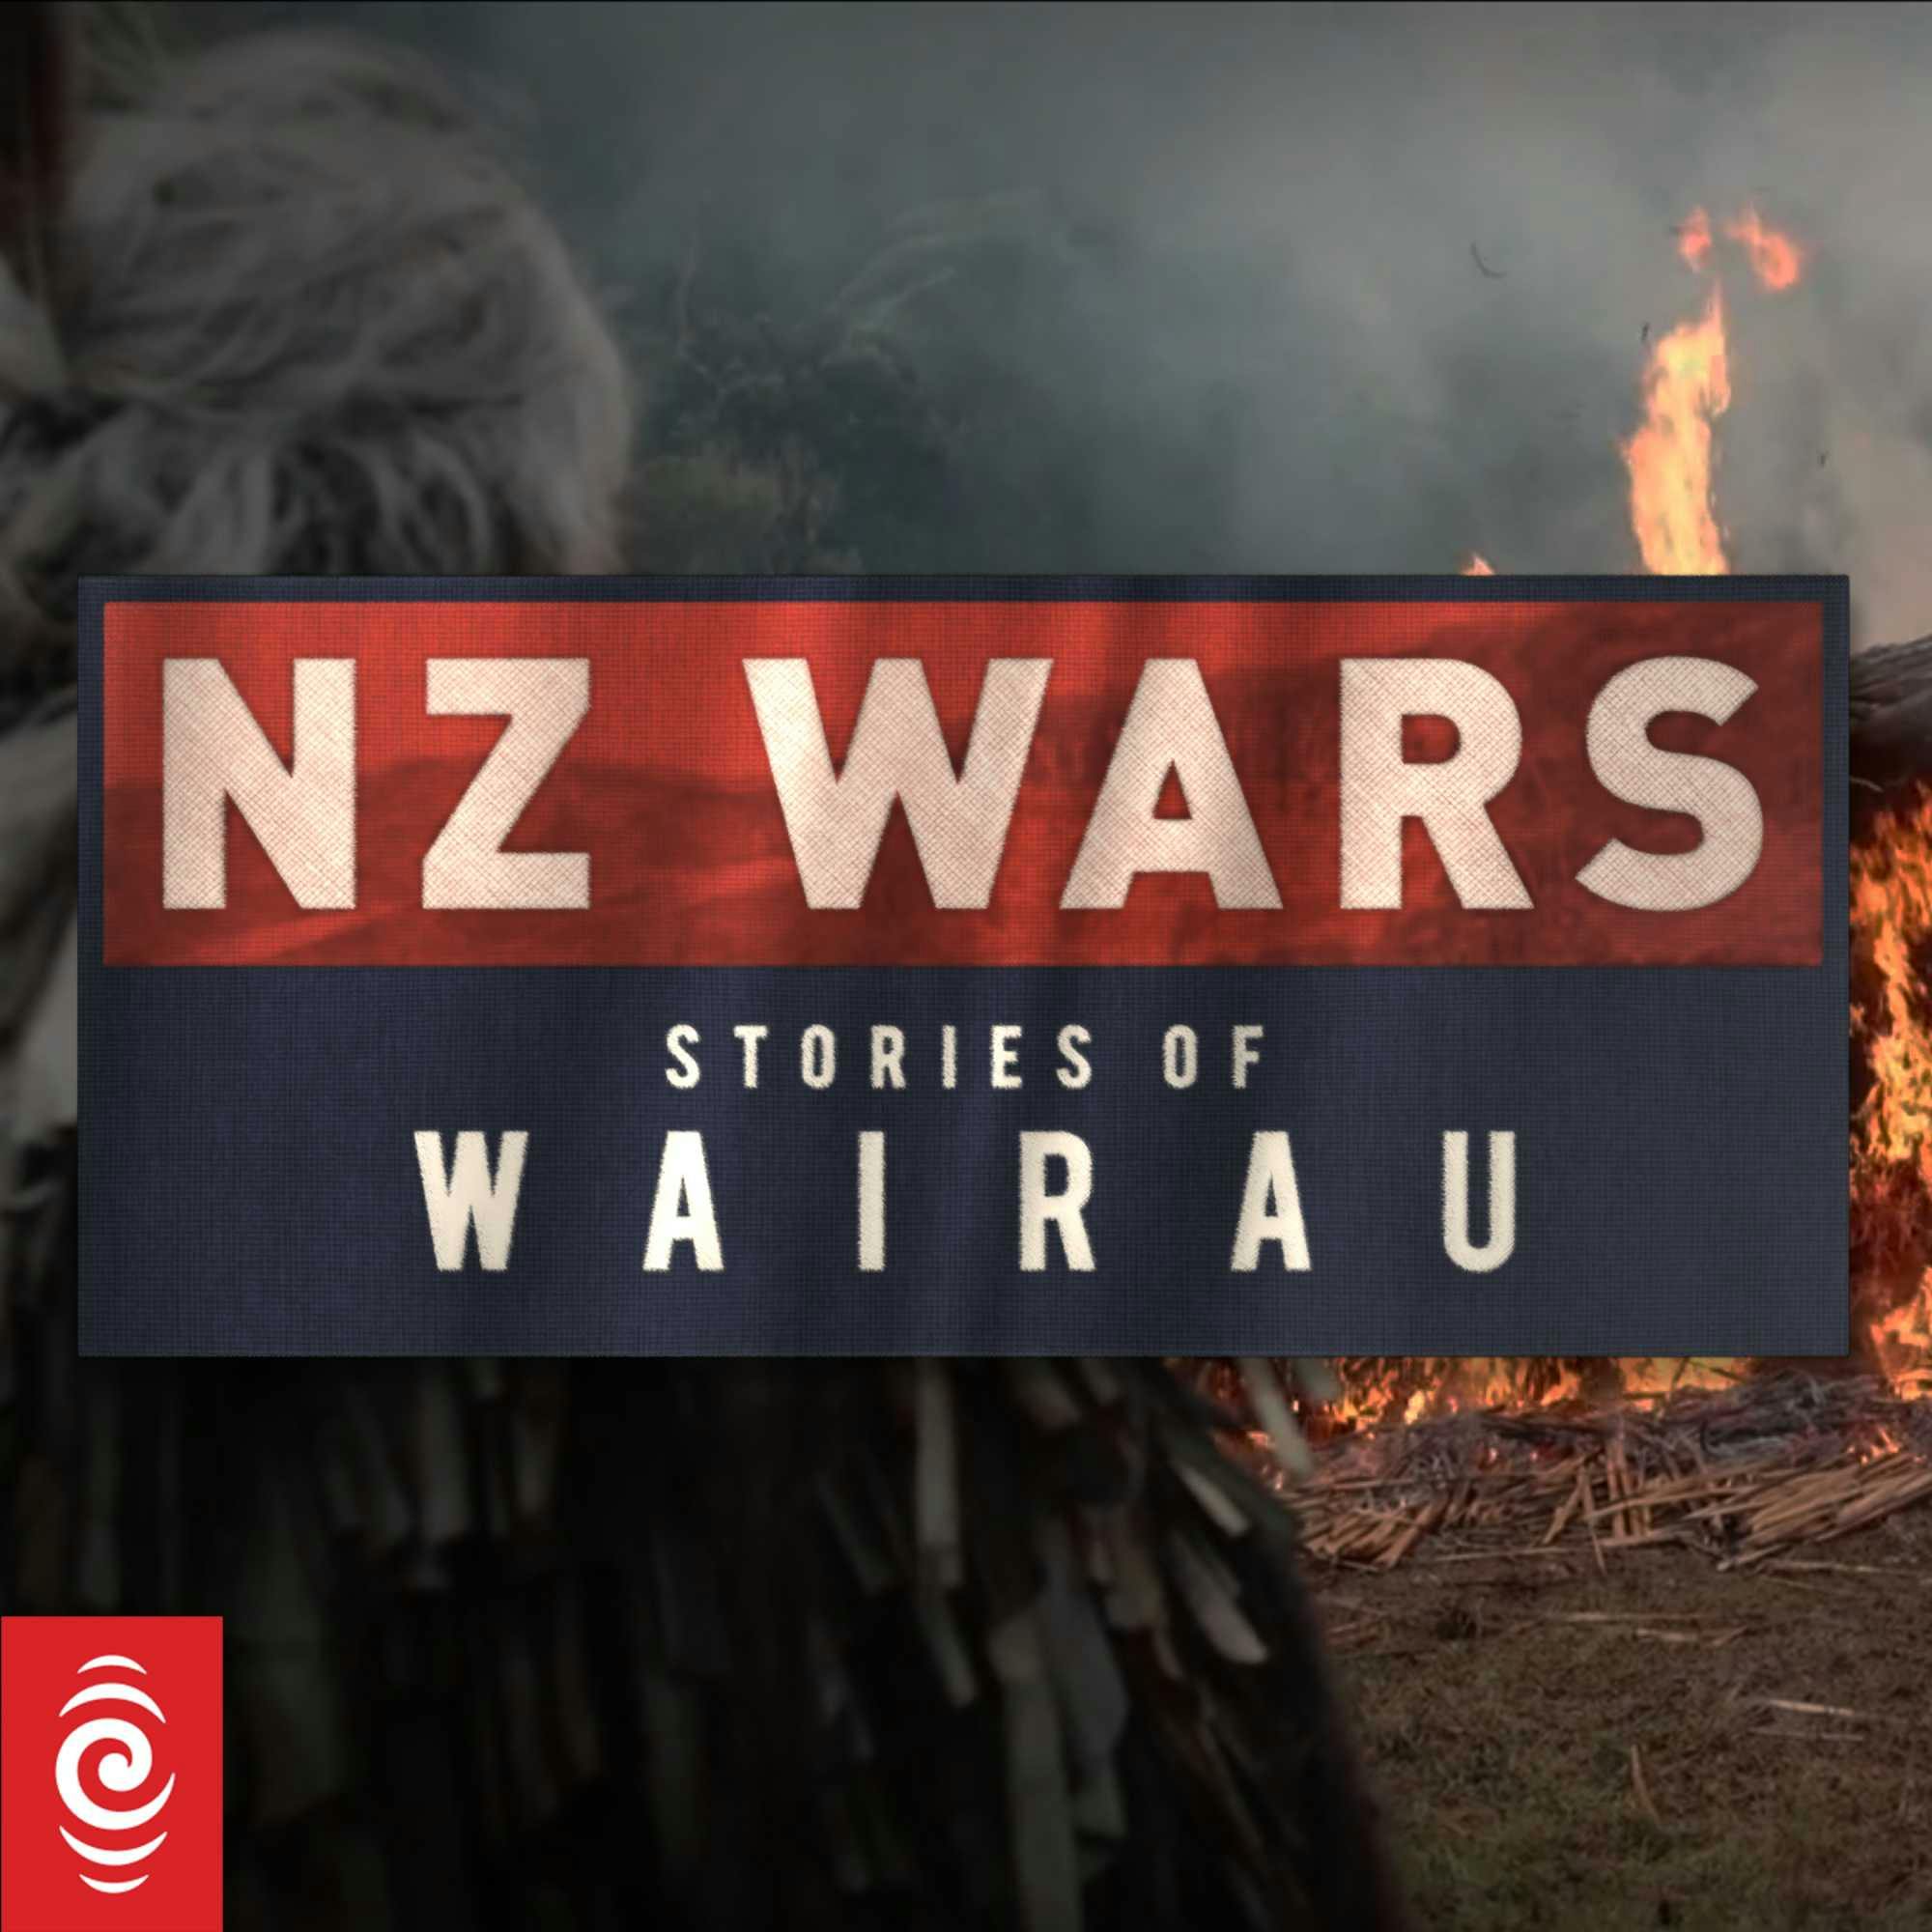 NZ Wars: Stories of Wairau